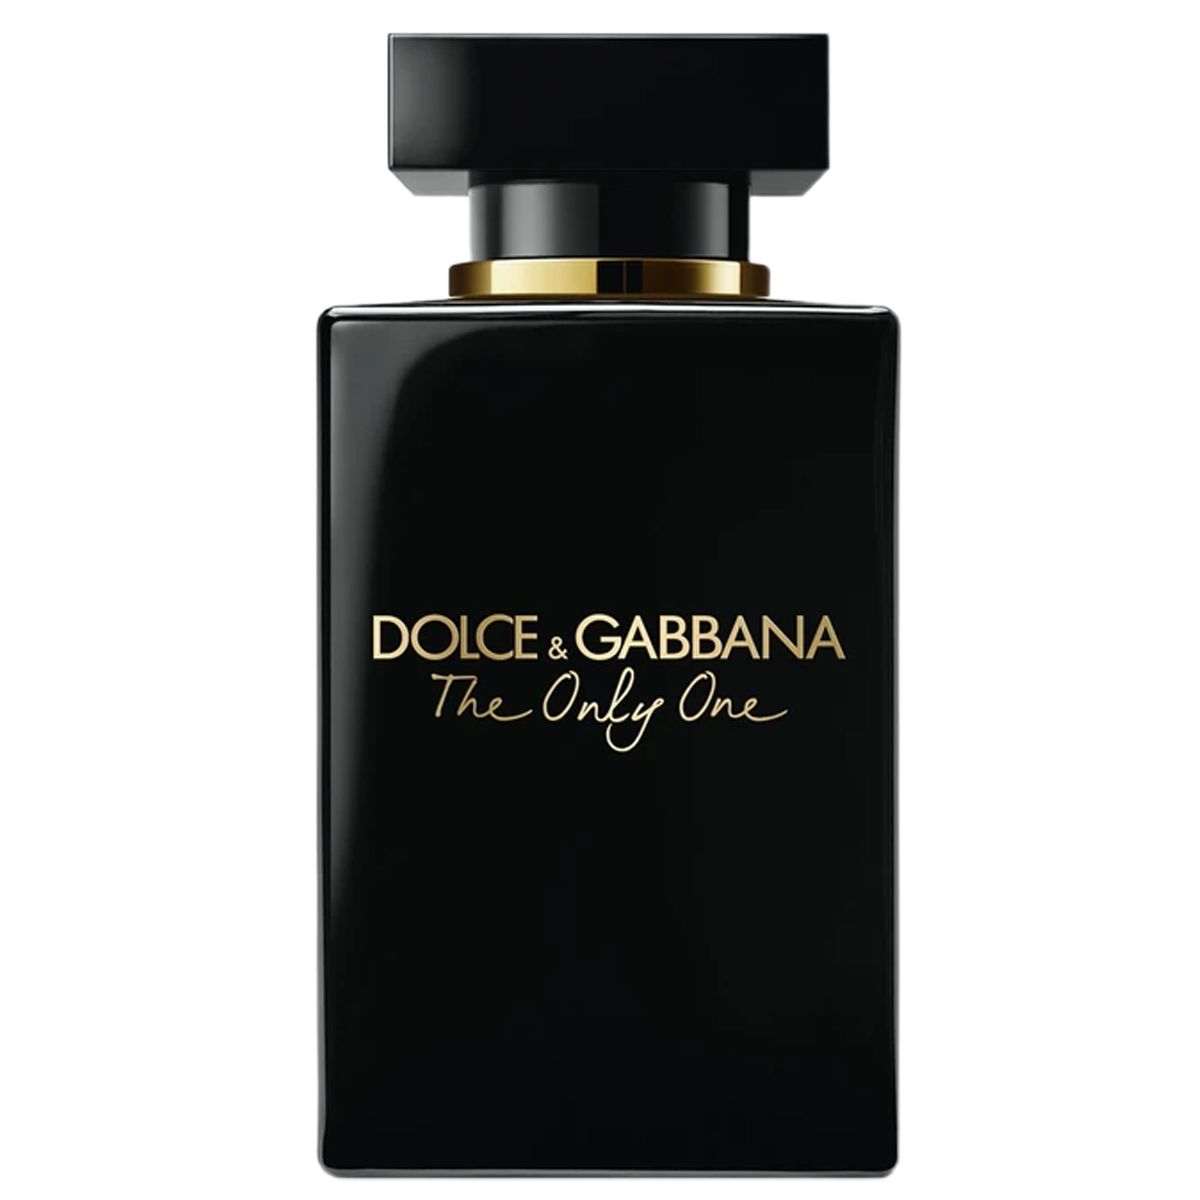  Dolce & Gabbana The Only One Eau de Parfum Intense For Women 